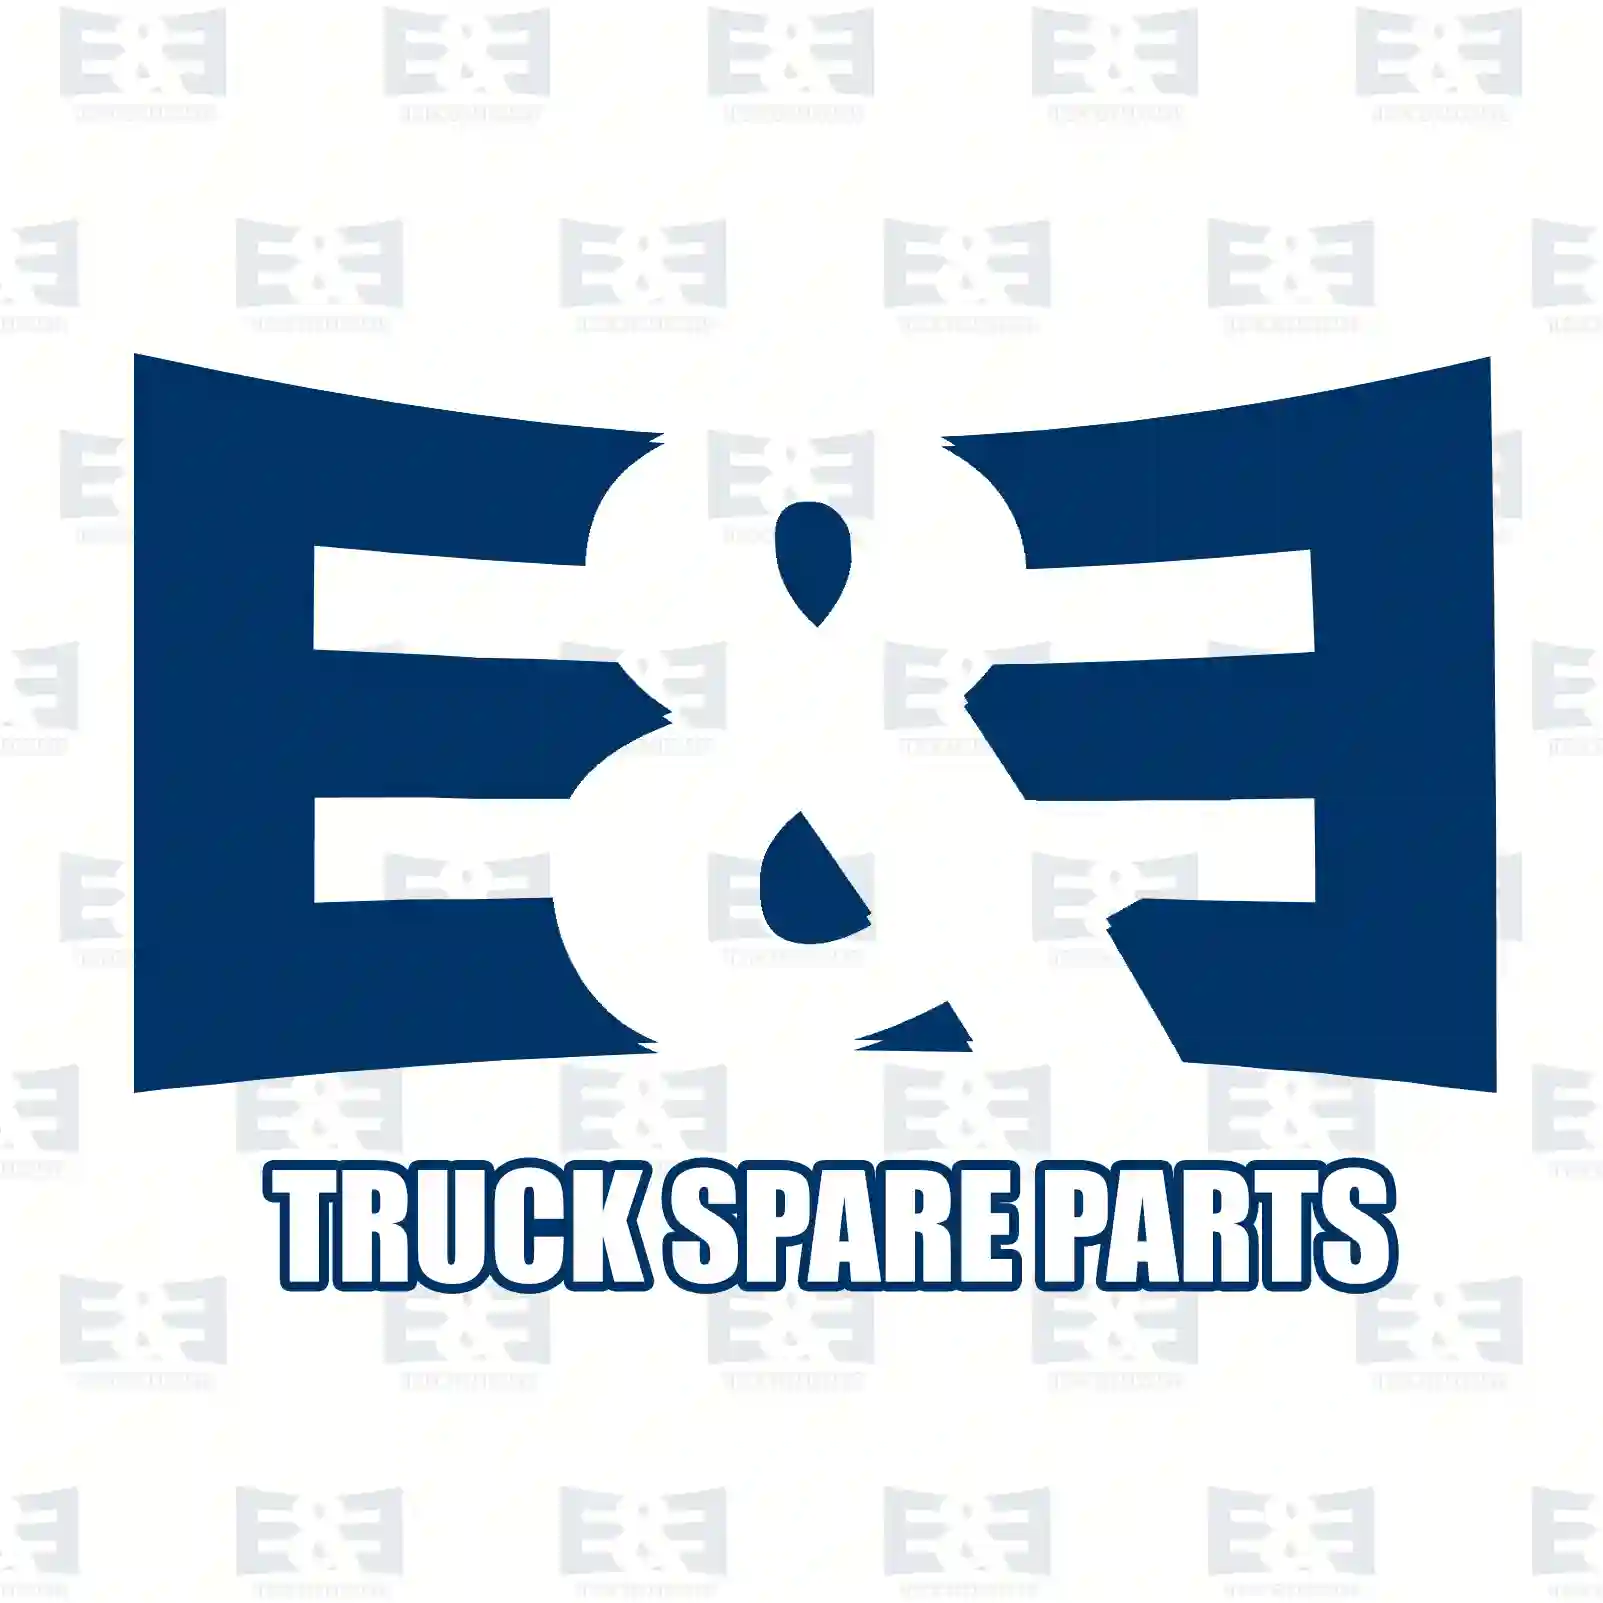 Gear shift knob, 2E2277220, 1309314, 1336636, 1369556, 1369977, 1482996, 1485718, ZG30525-0008 ||  2E2277220 E&E Truck Spare Parts | Truck Spare Parts, Auotomotive Spare Parts Gear shift knob, 2E2277220, 1309314, 1336636, 1369556, 1369977, 1482996, 1485718, ZG30525-0008 ||  2E2277220 E&E Truck Spare Parts | Truck Spare Parts, Auotomotive Spare Parts